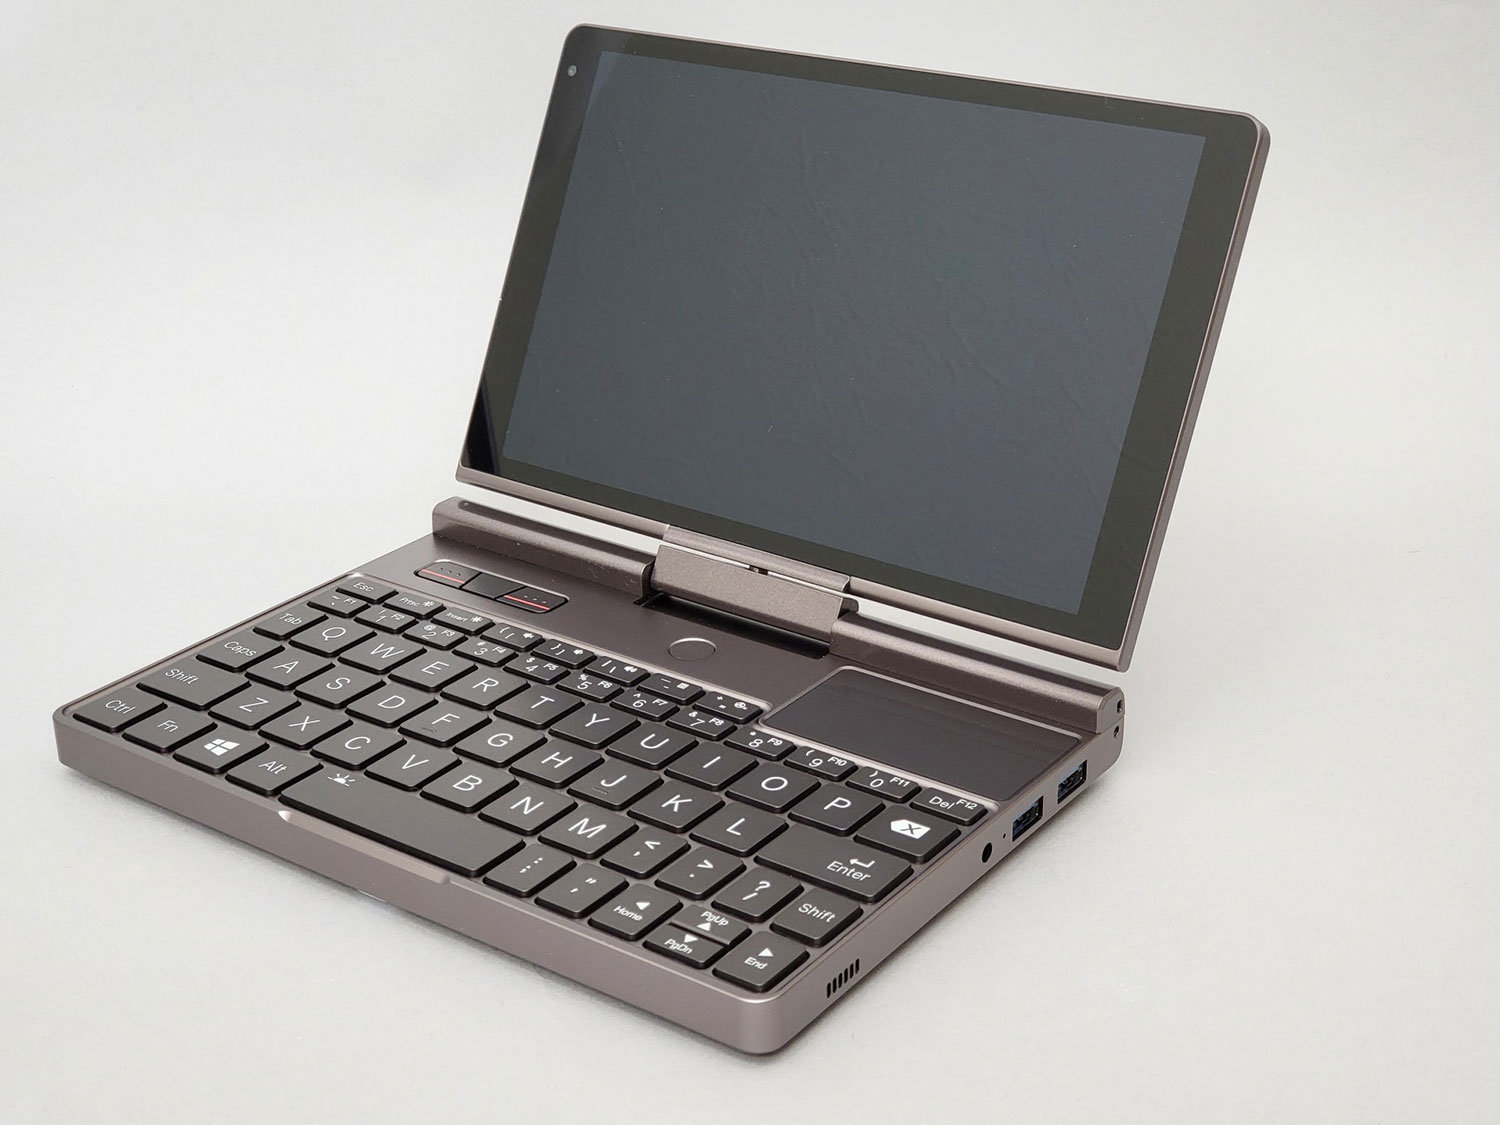 11世代Core i7を搭載した8型の超小型PC「GPD Pocket 3」で 